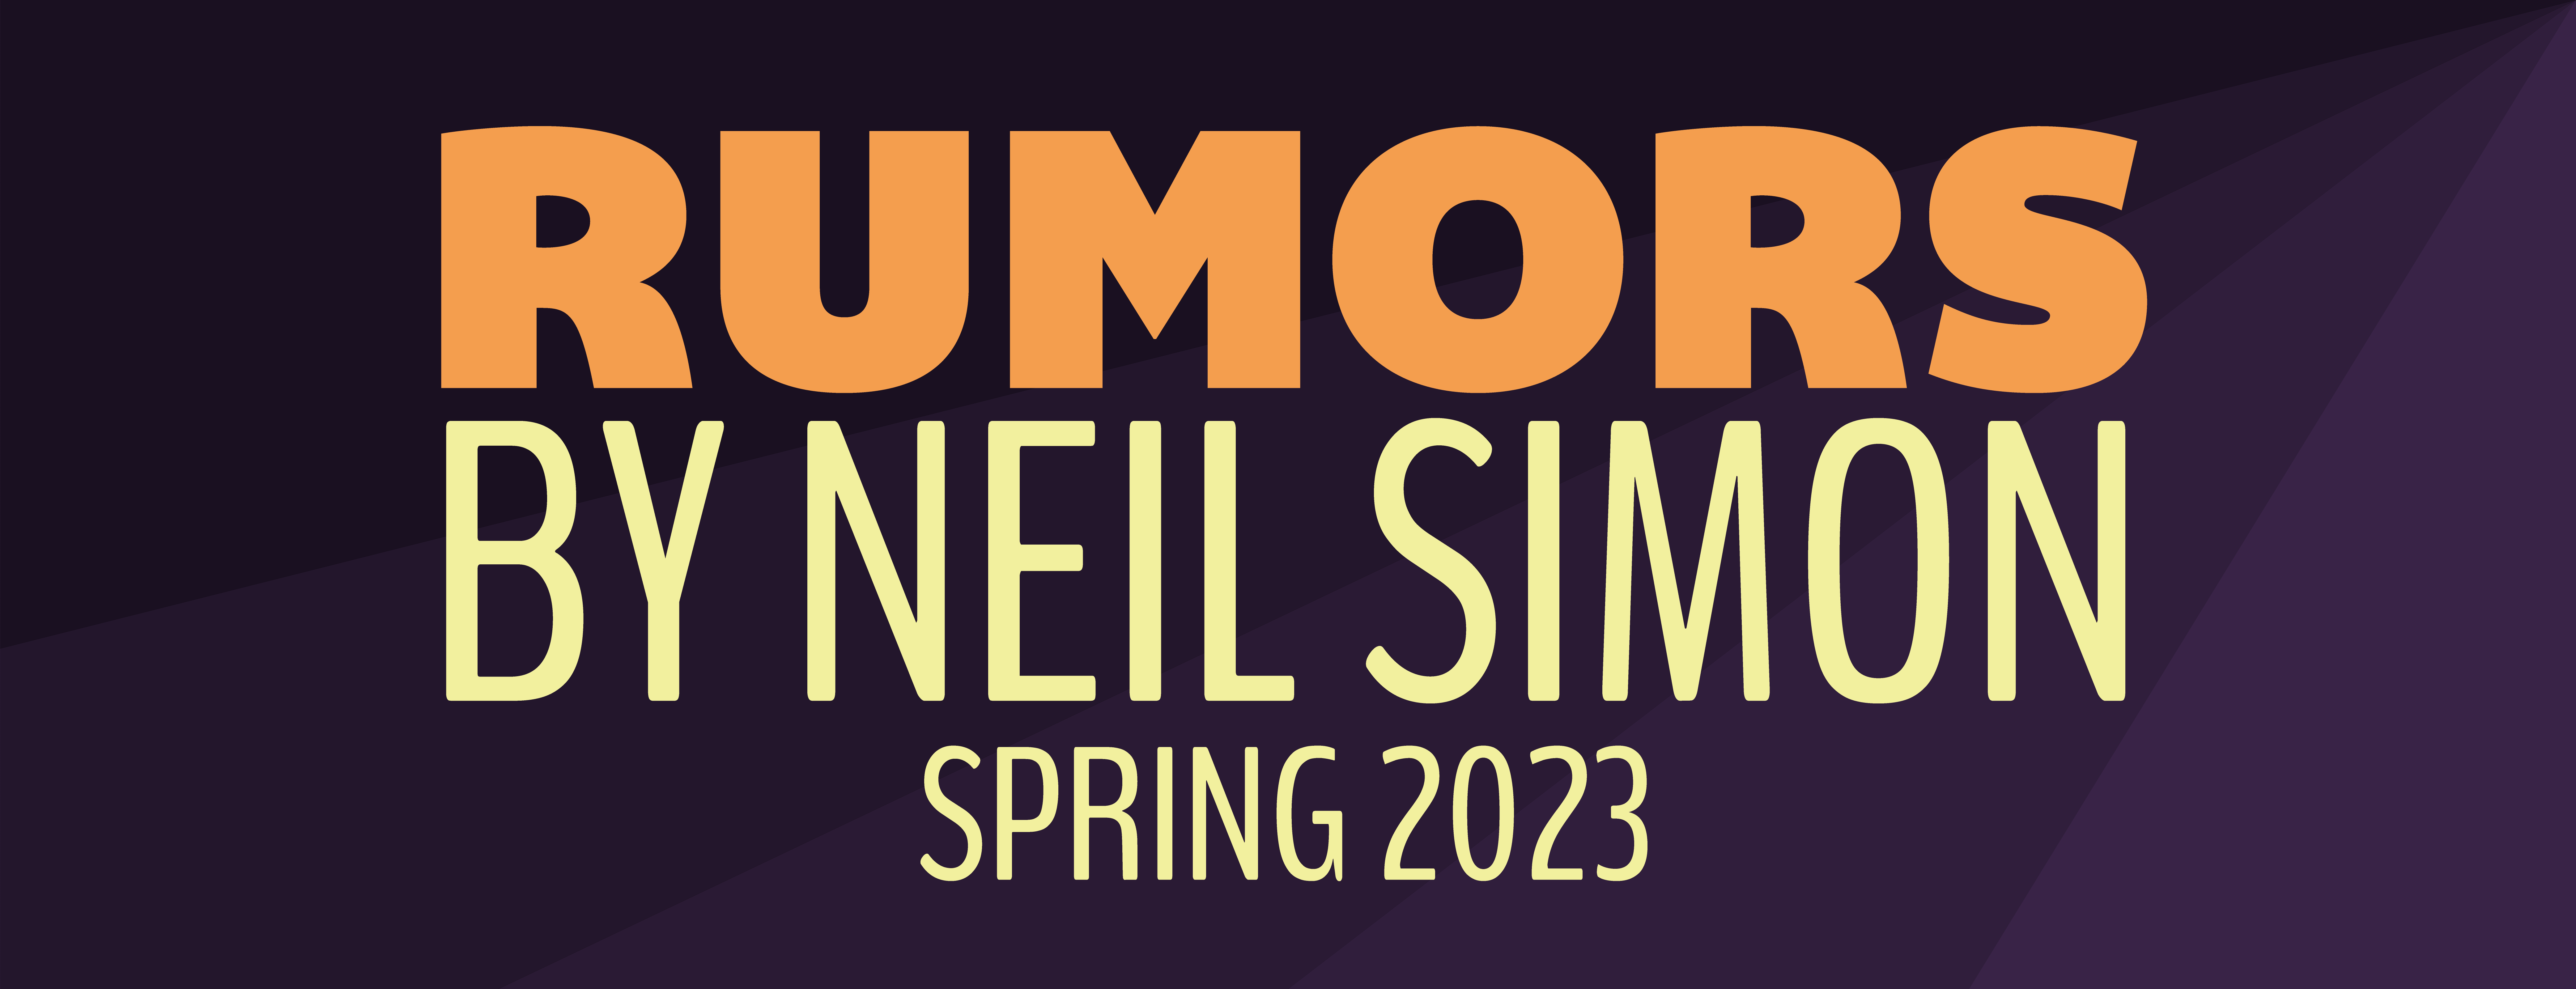 rumors-banner